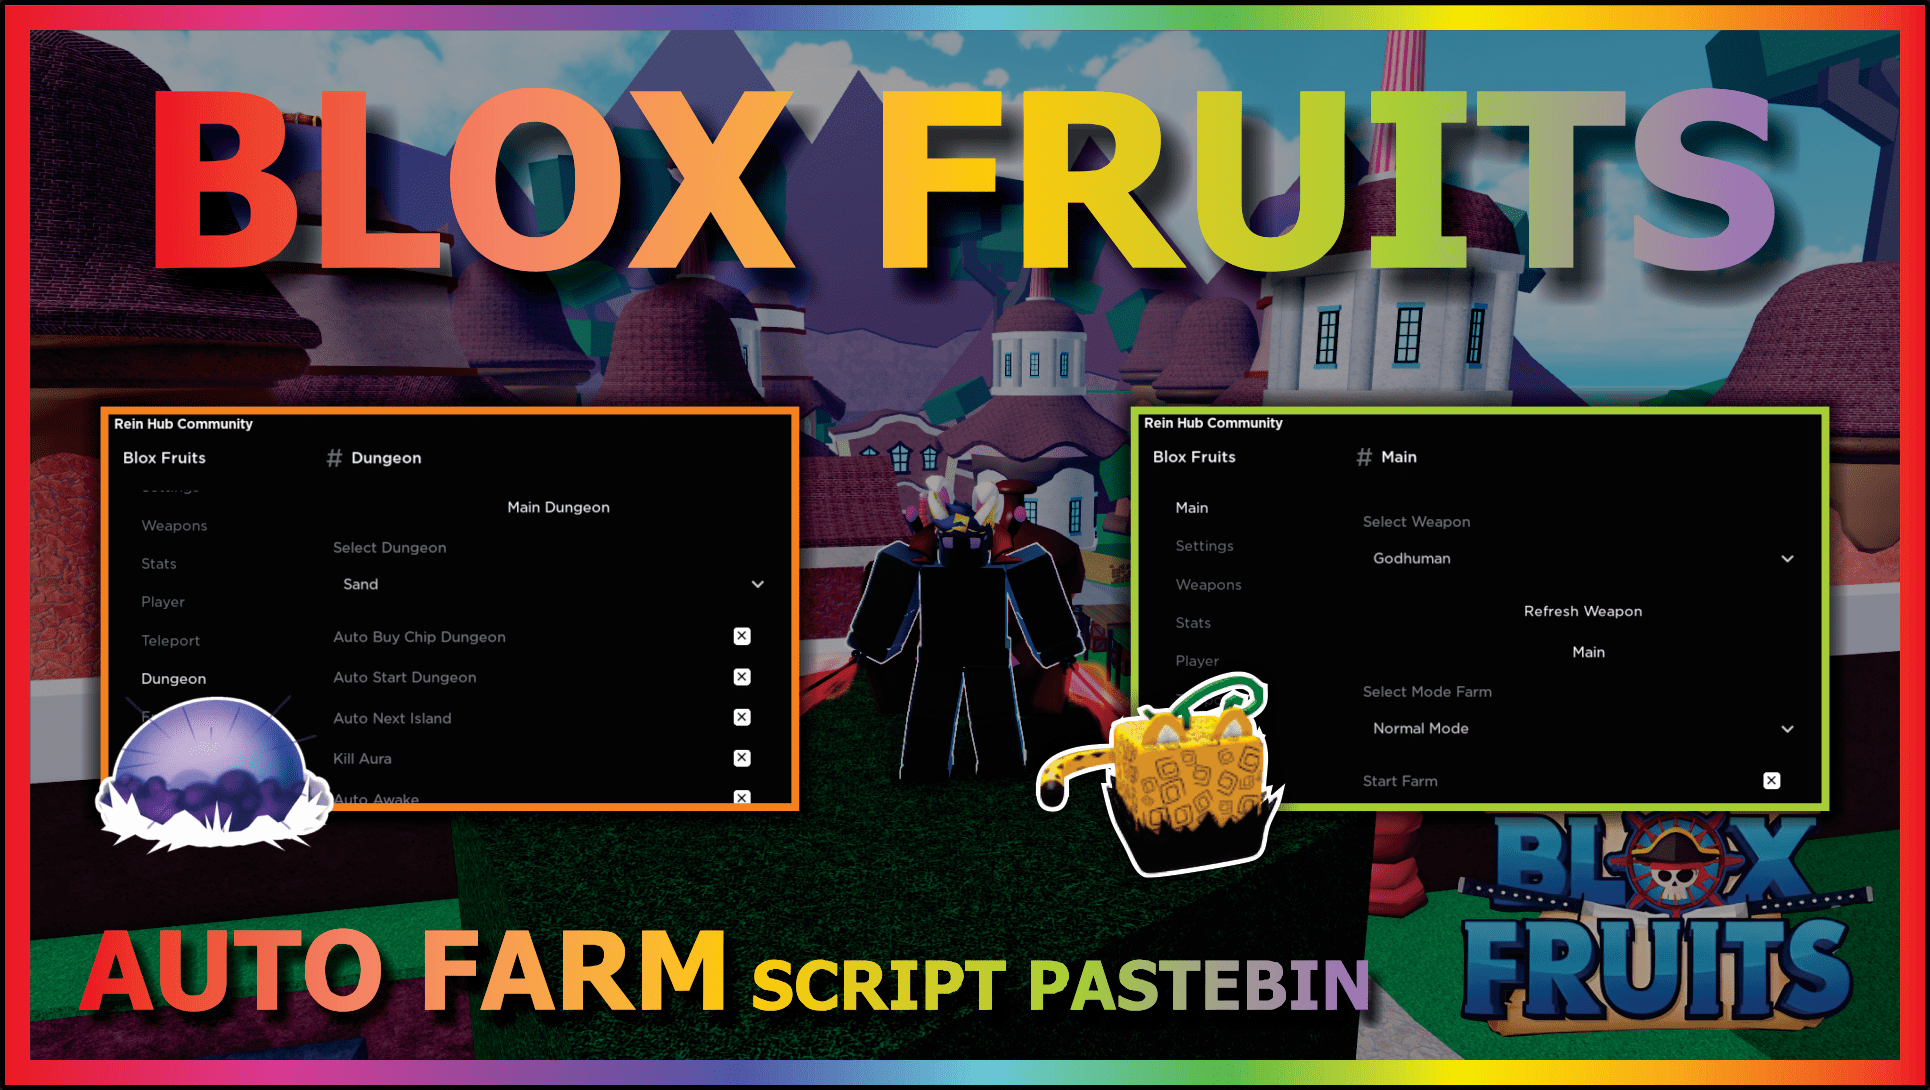 Blox Fruits script - (Check profile) #robloxscripts #robloxscript